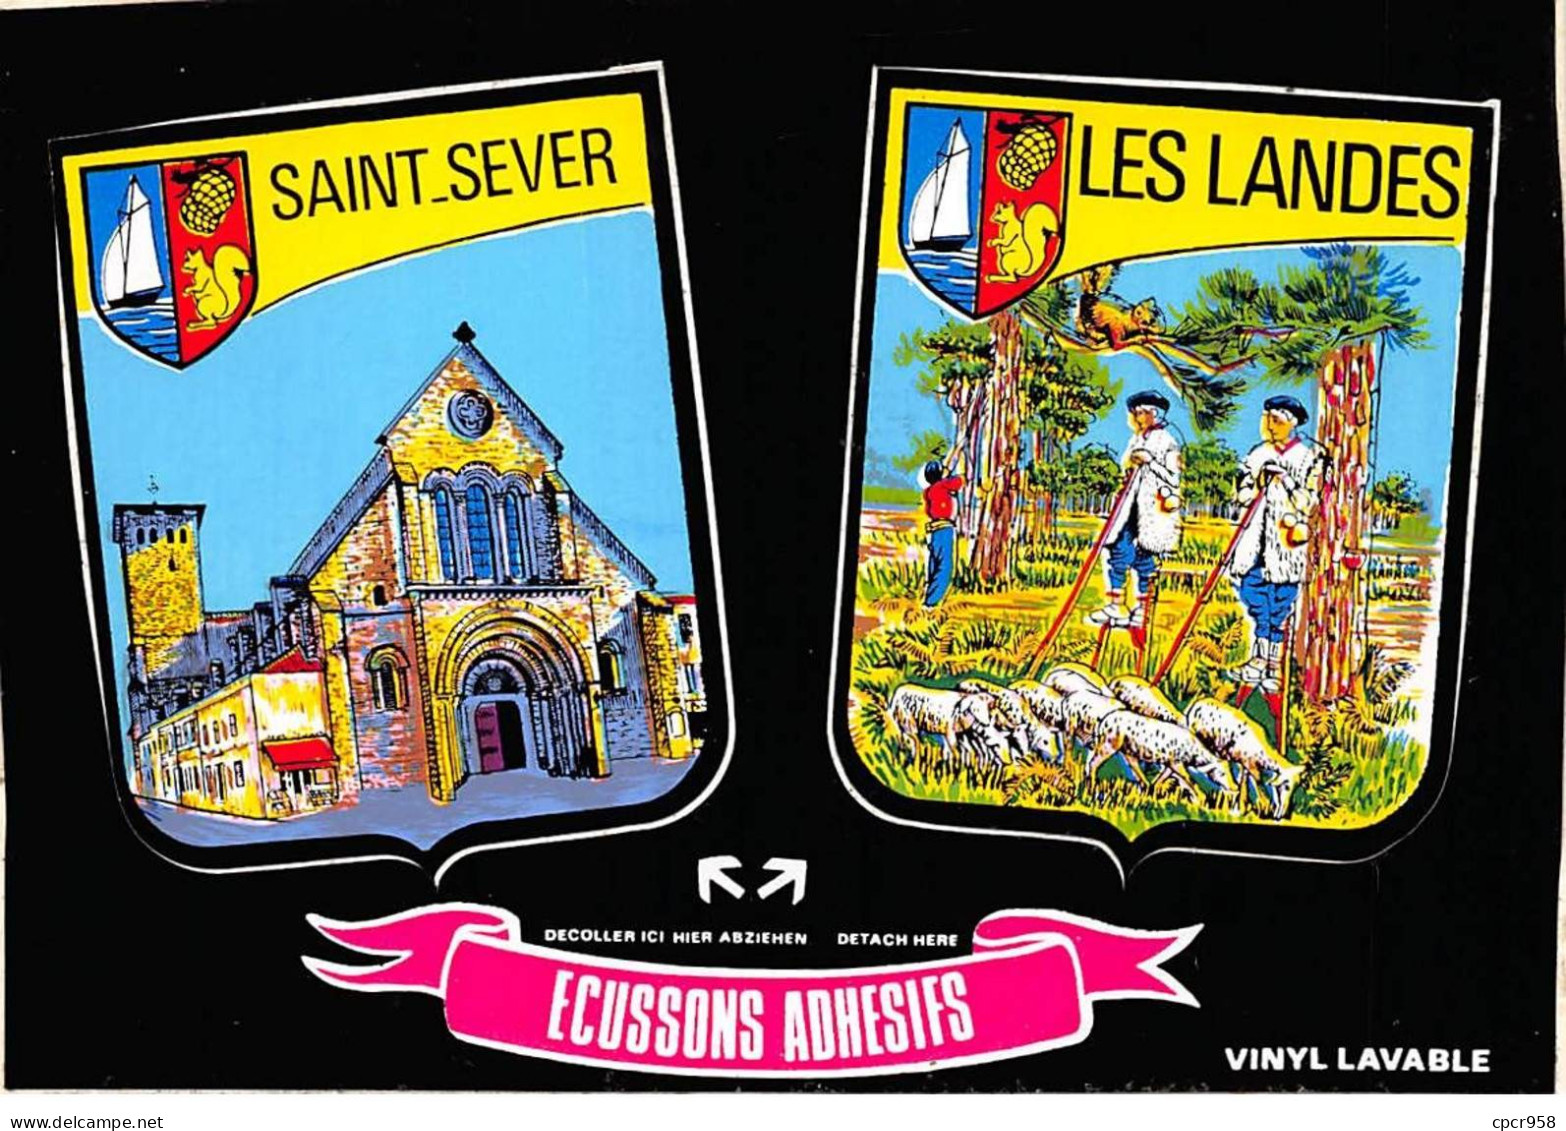 40 - SAINT SEVER - SAN23477 - Ecussons Adhésifs - CPSM 15X10,5 Cm - Saint Sever